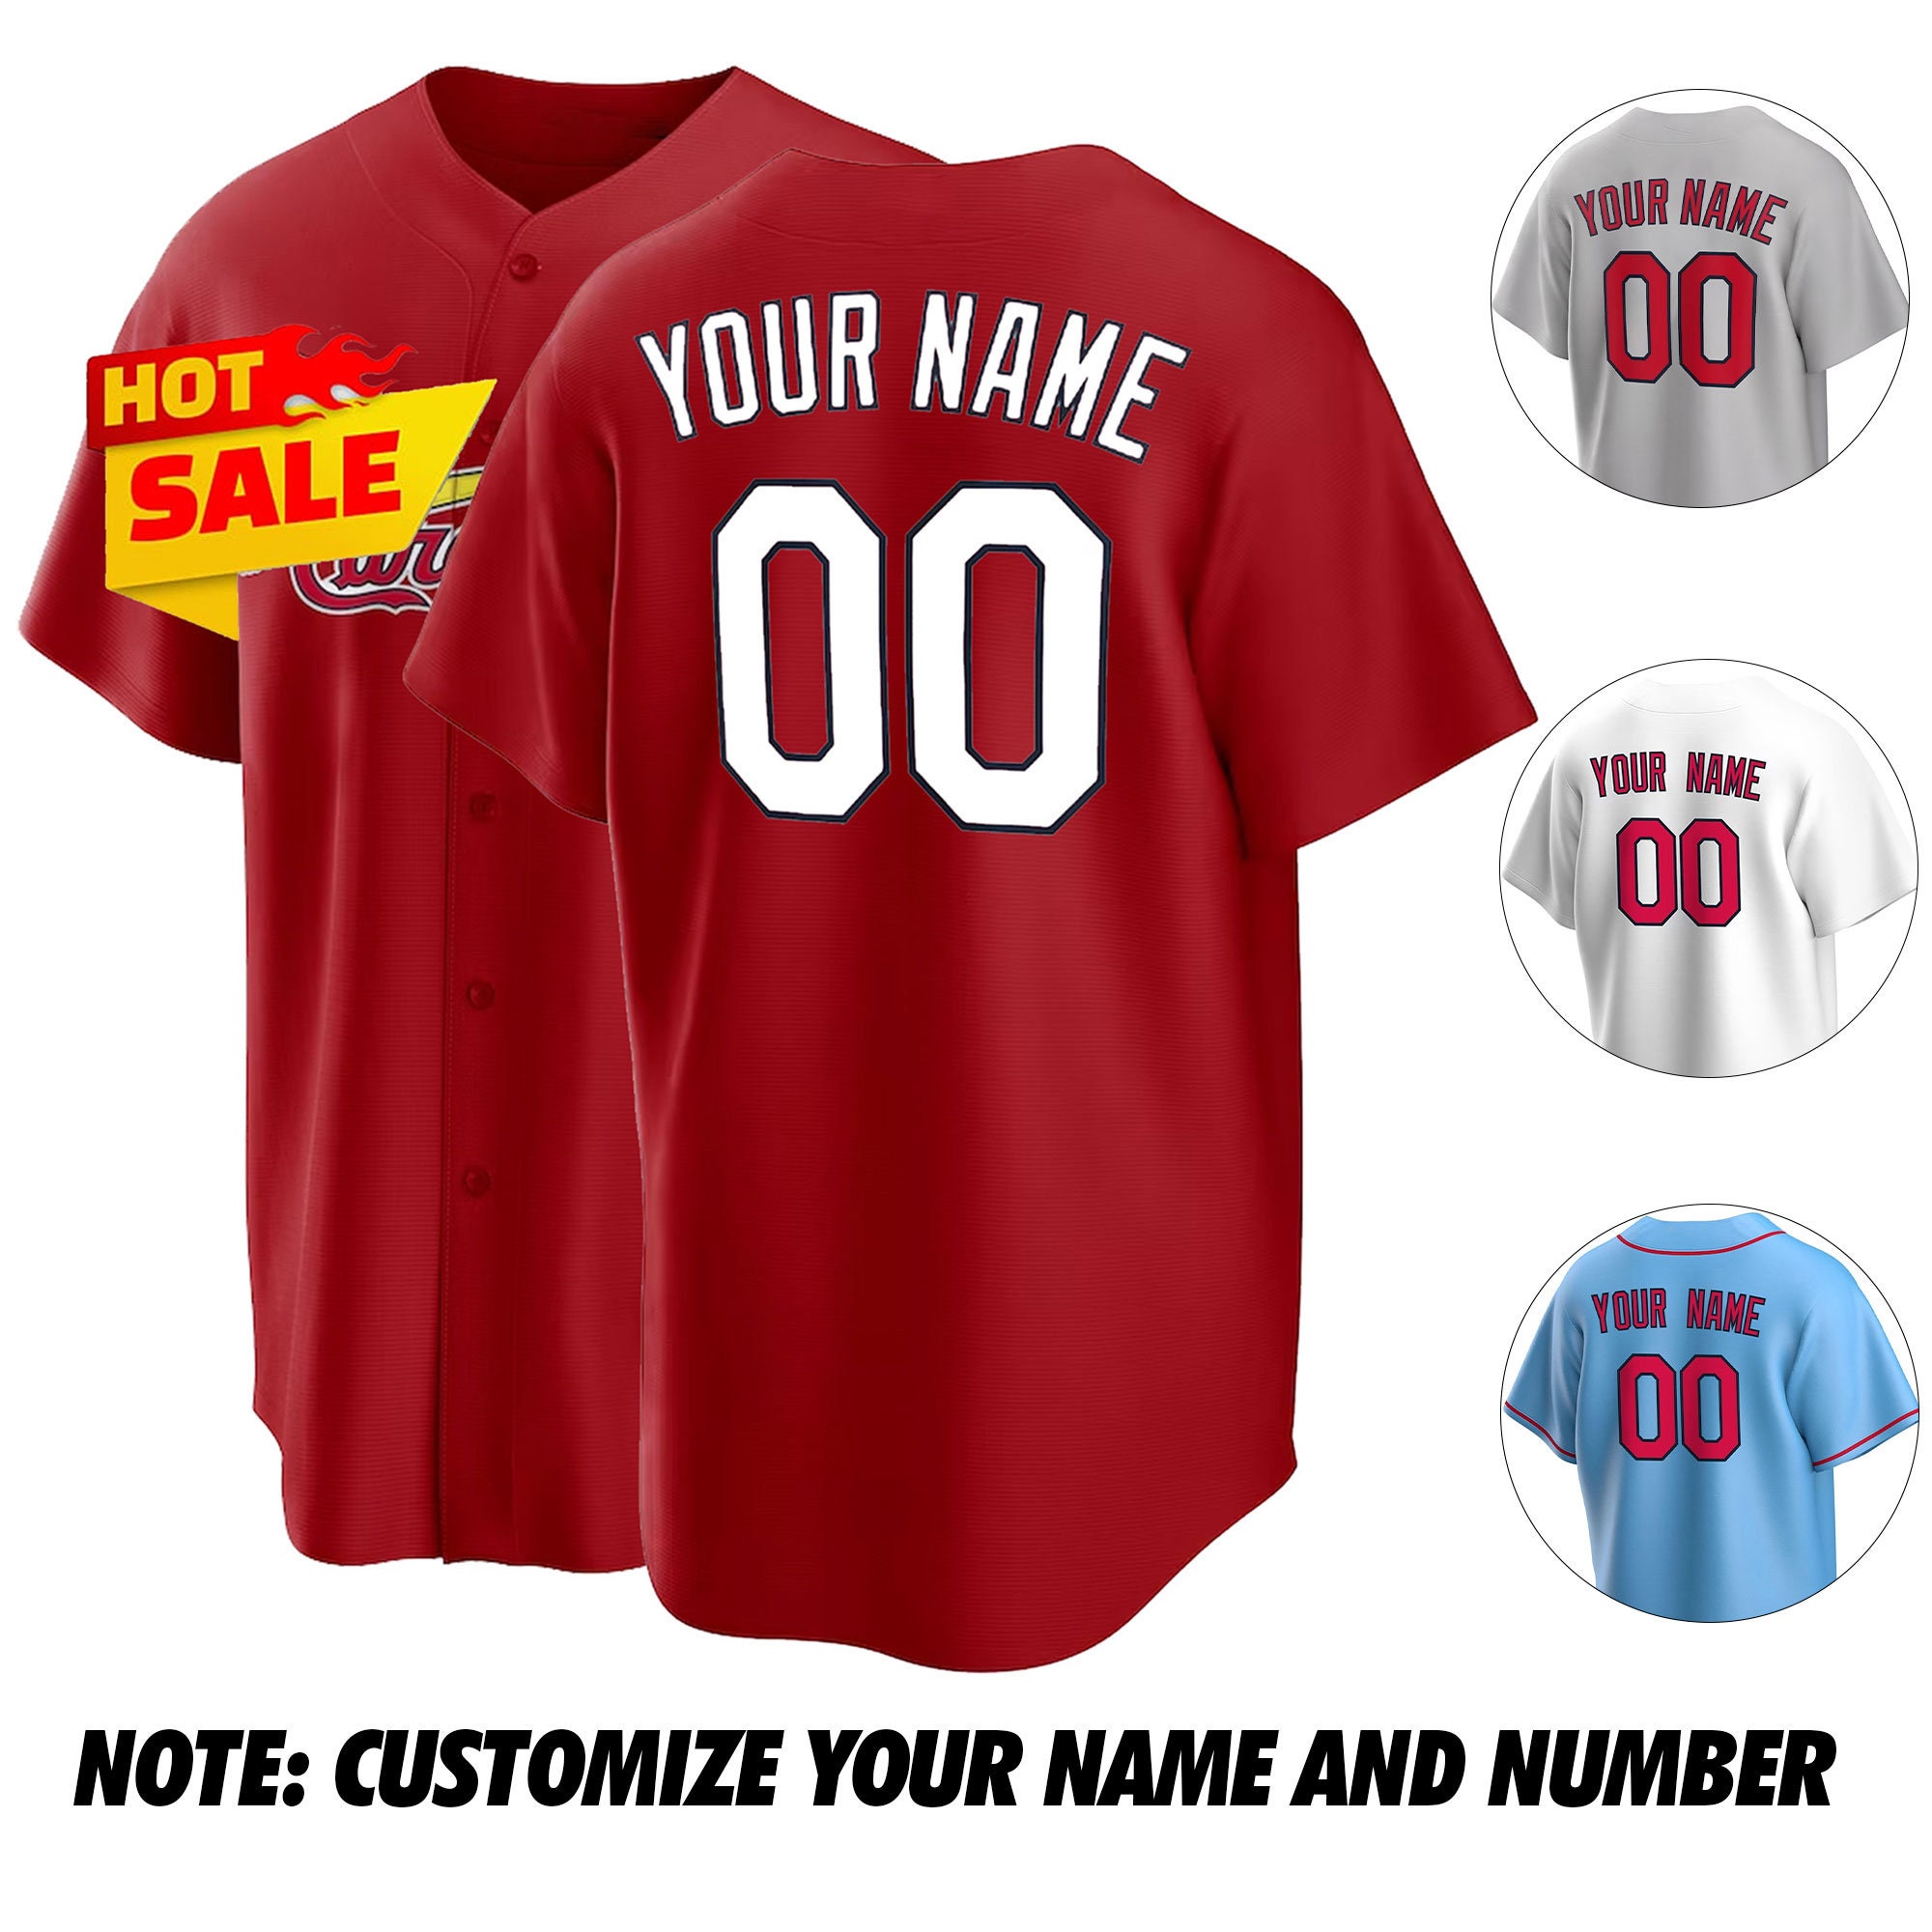 St. Louis Cardinals Custom Number And Name AOP MLB Hoodie Long Sleeve Zip  Hoodie Gift For Fans - Banantees